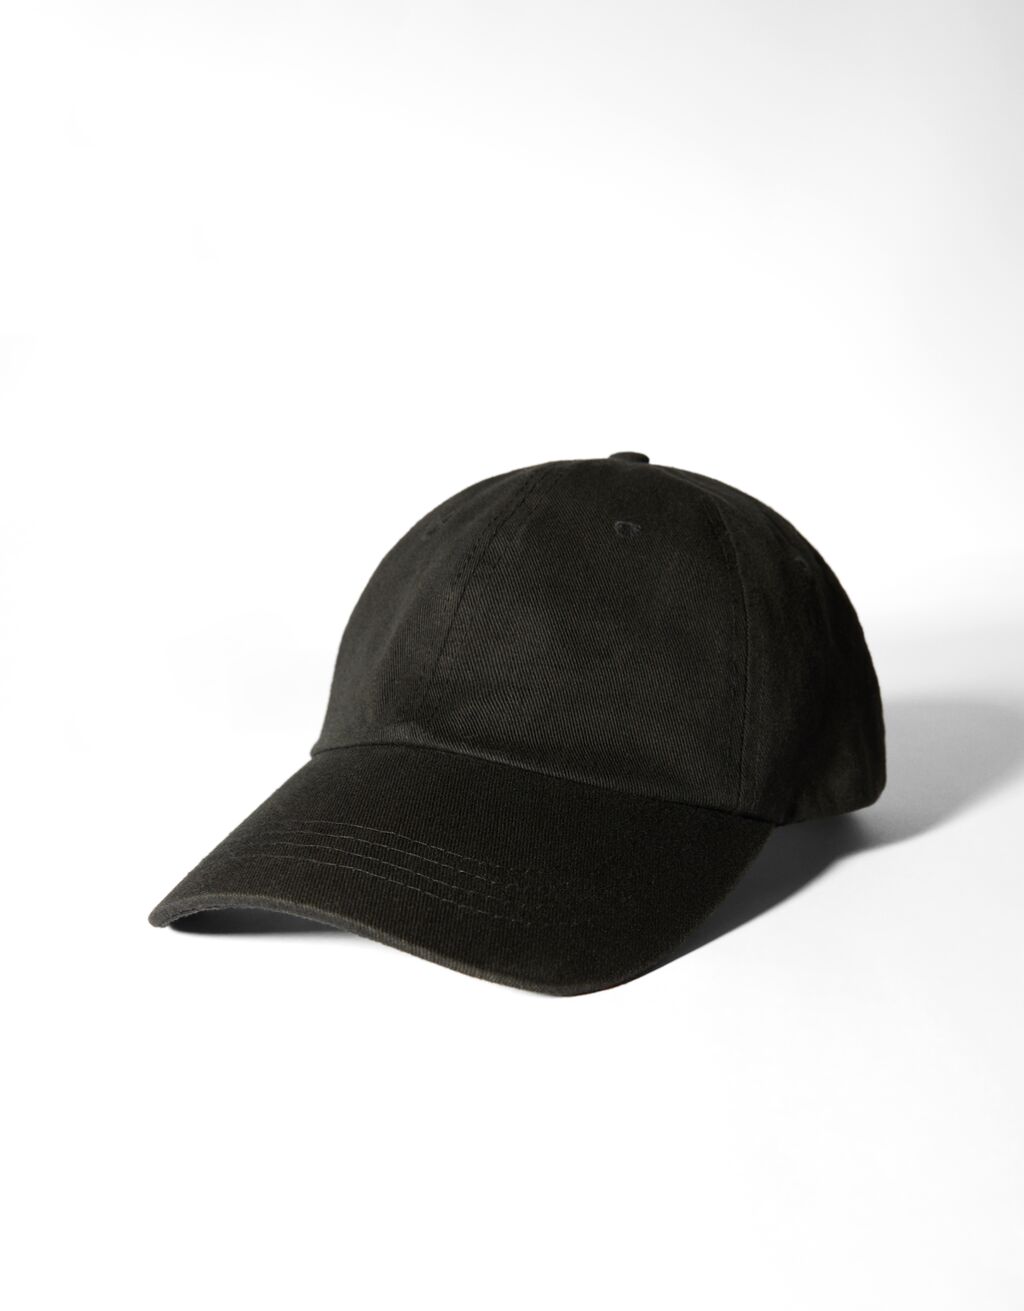 Customisable cap